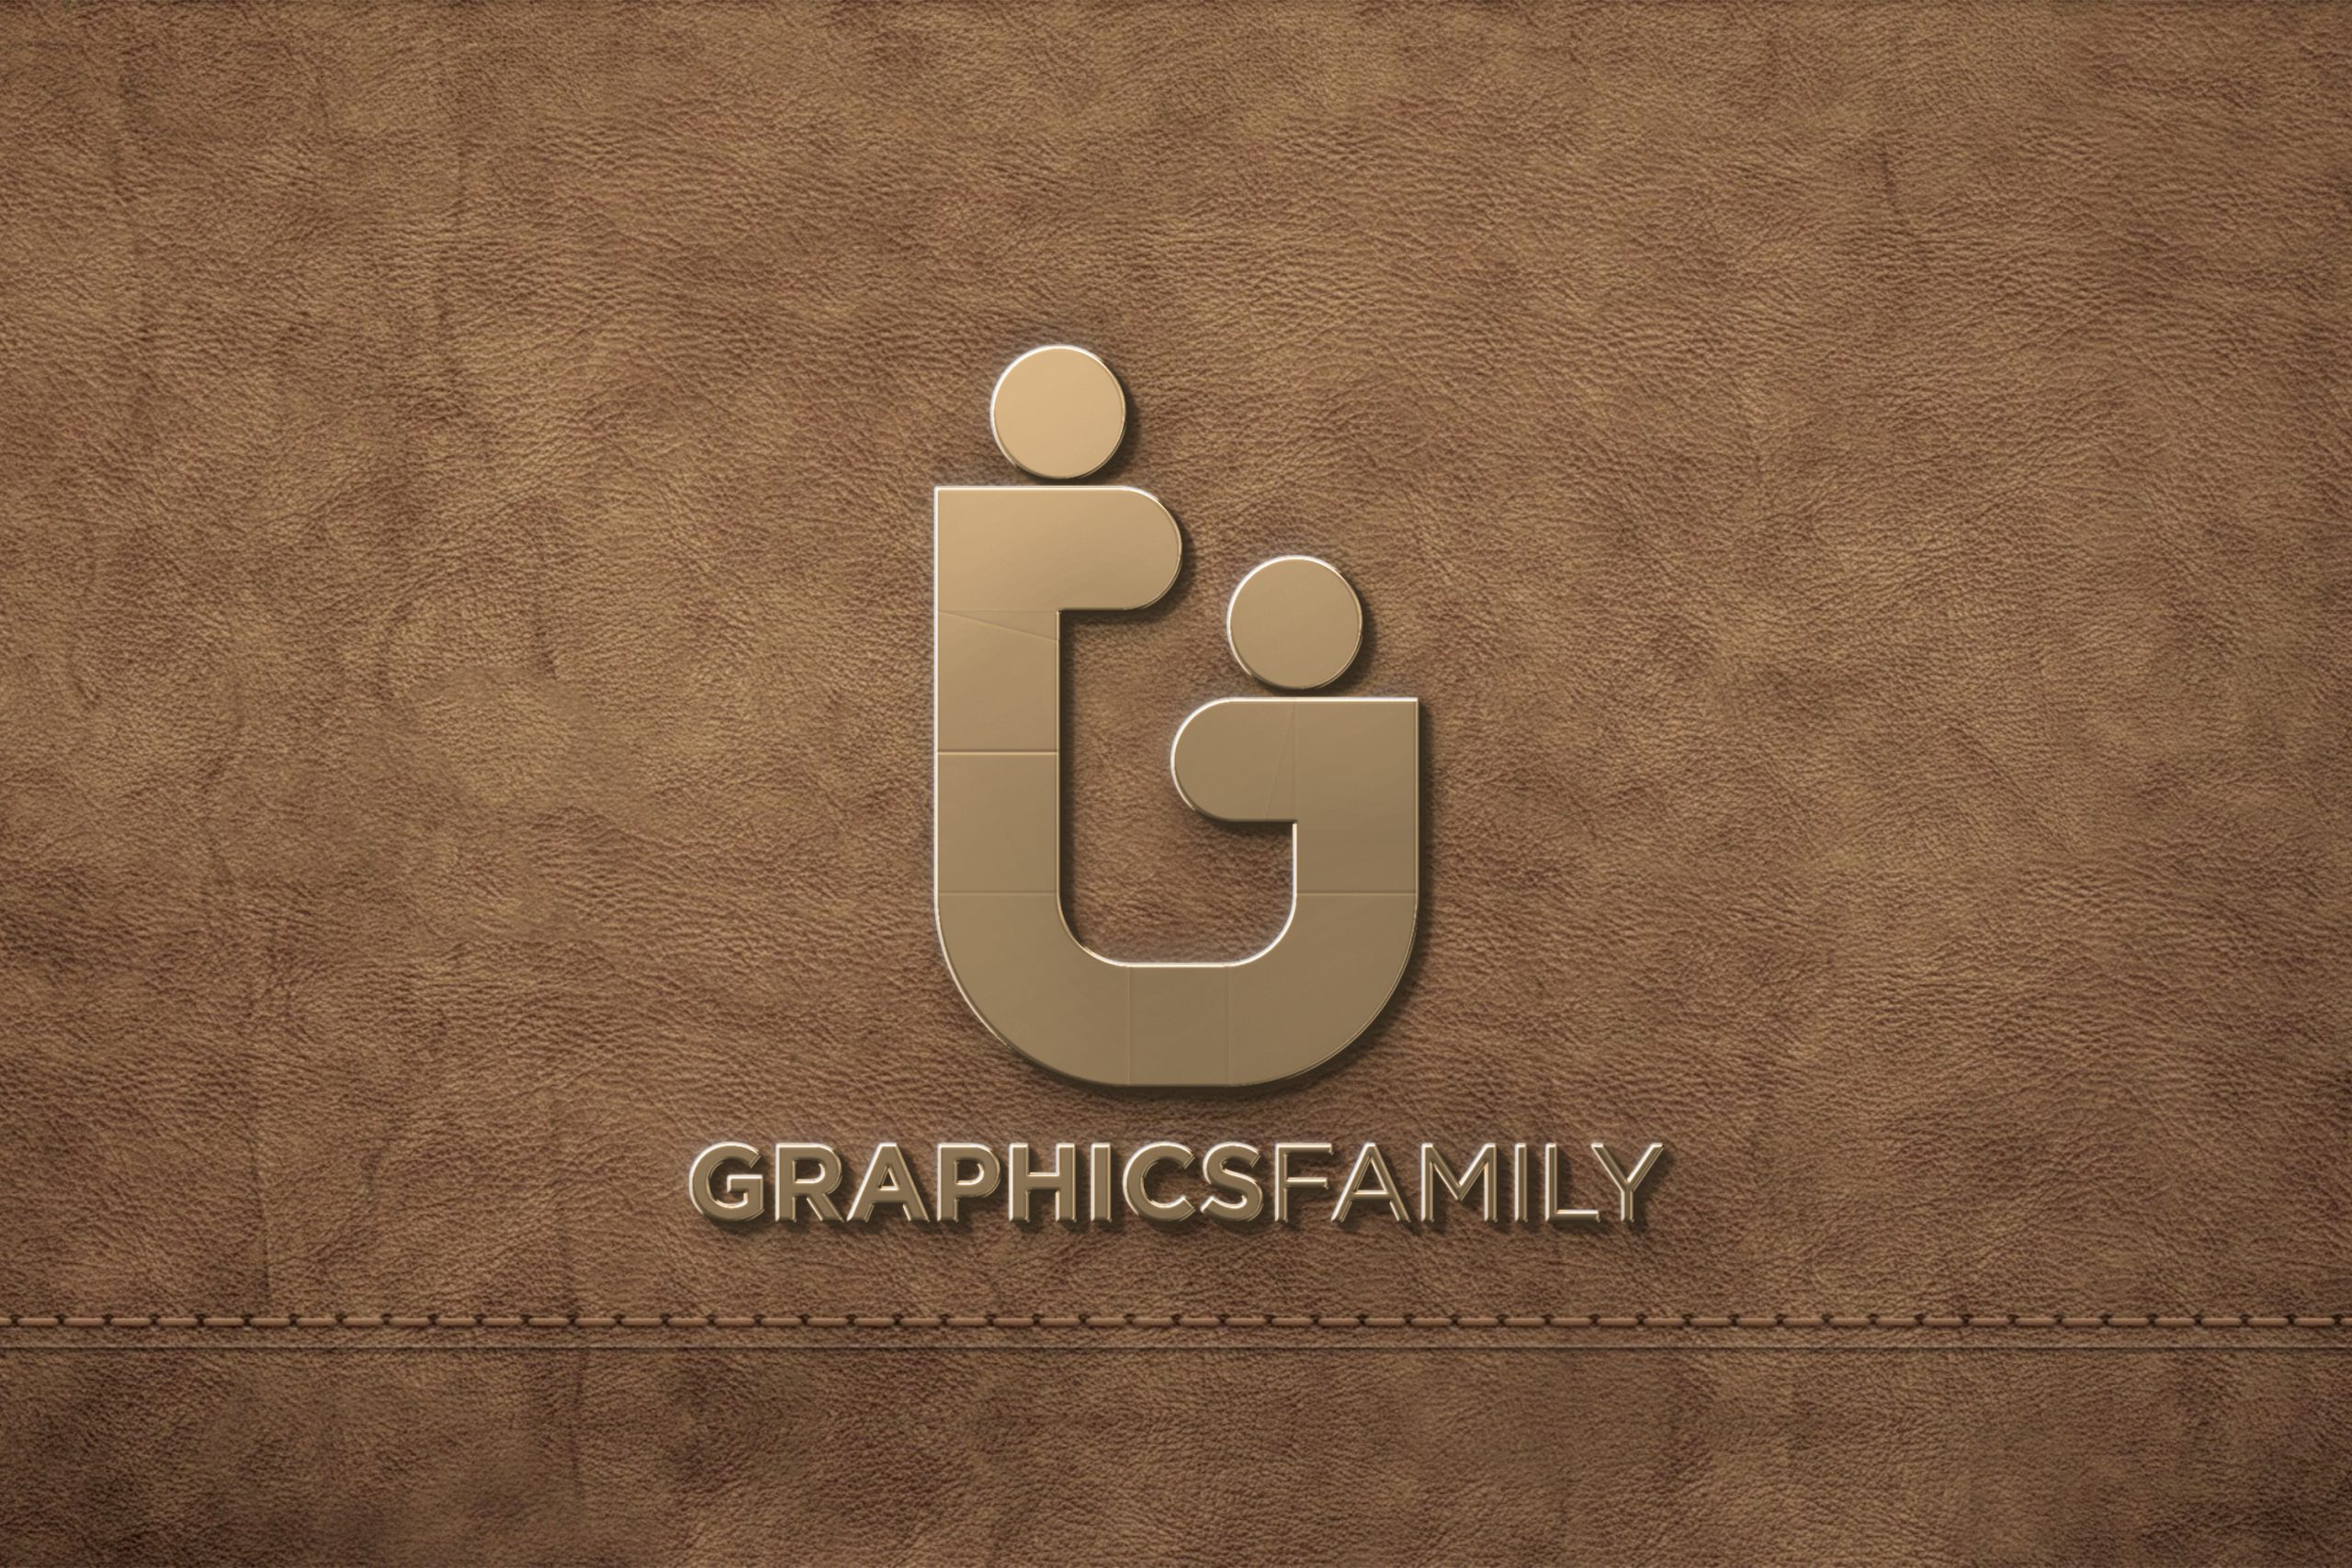 Golden logo mockup on leather background download